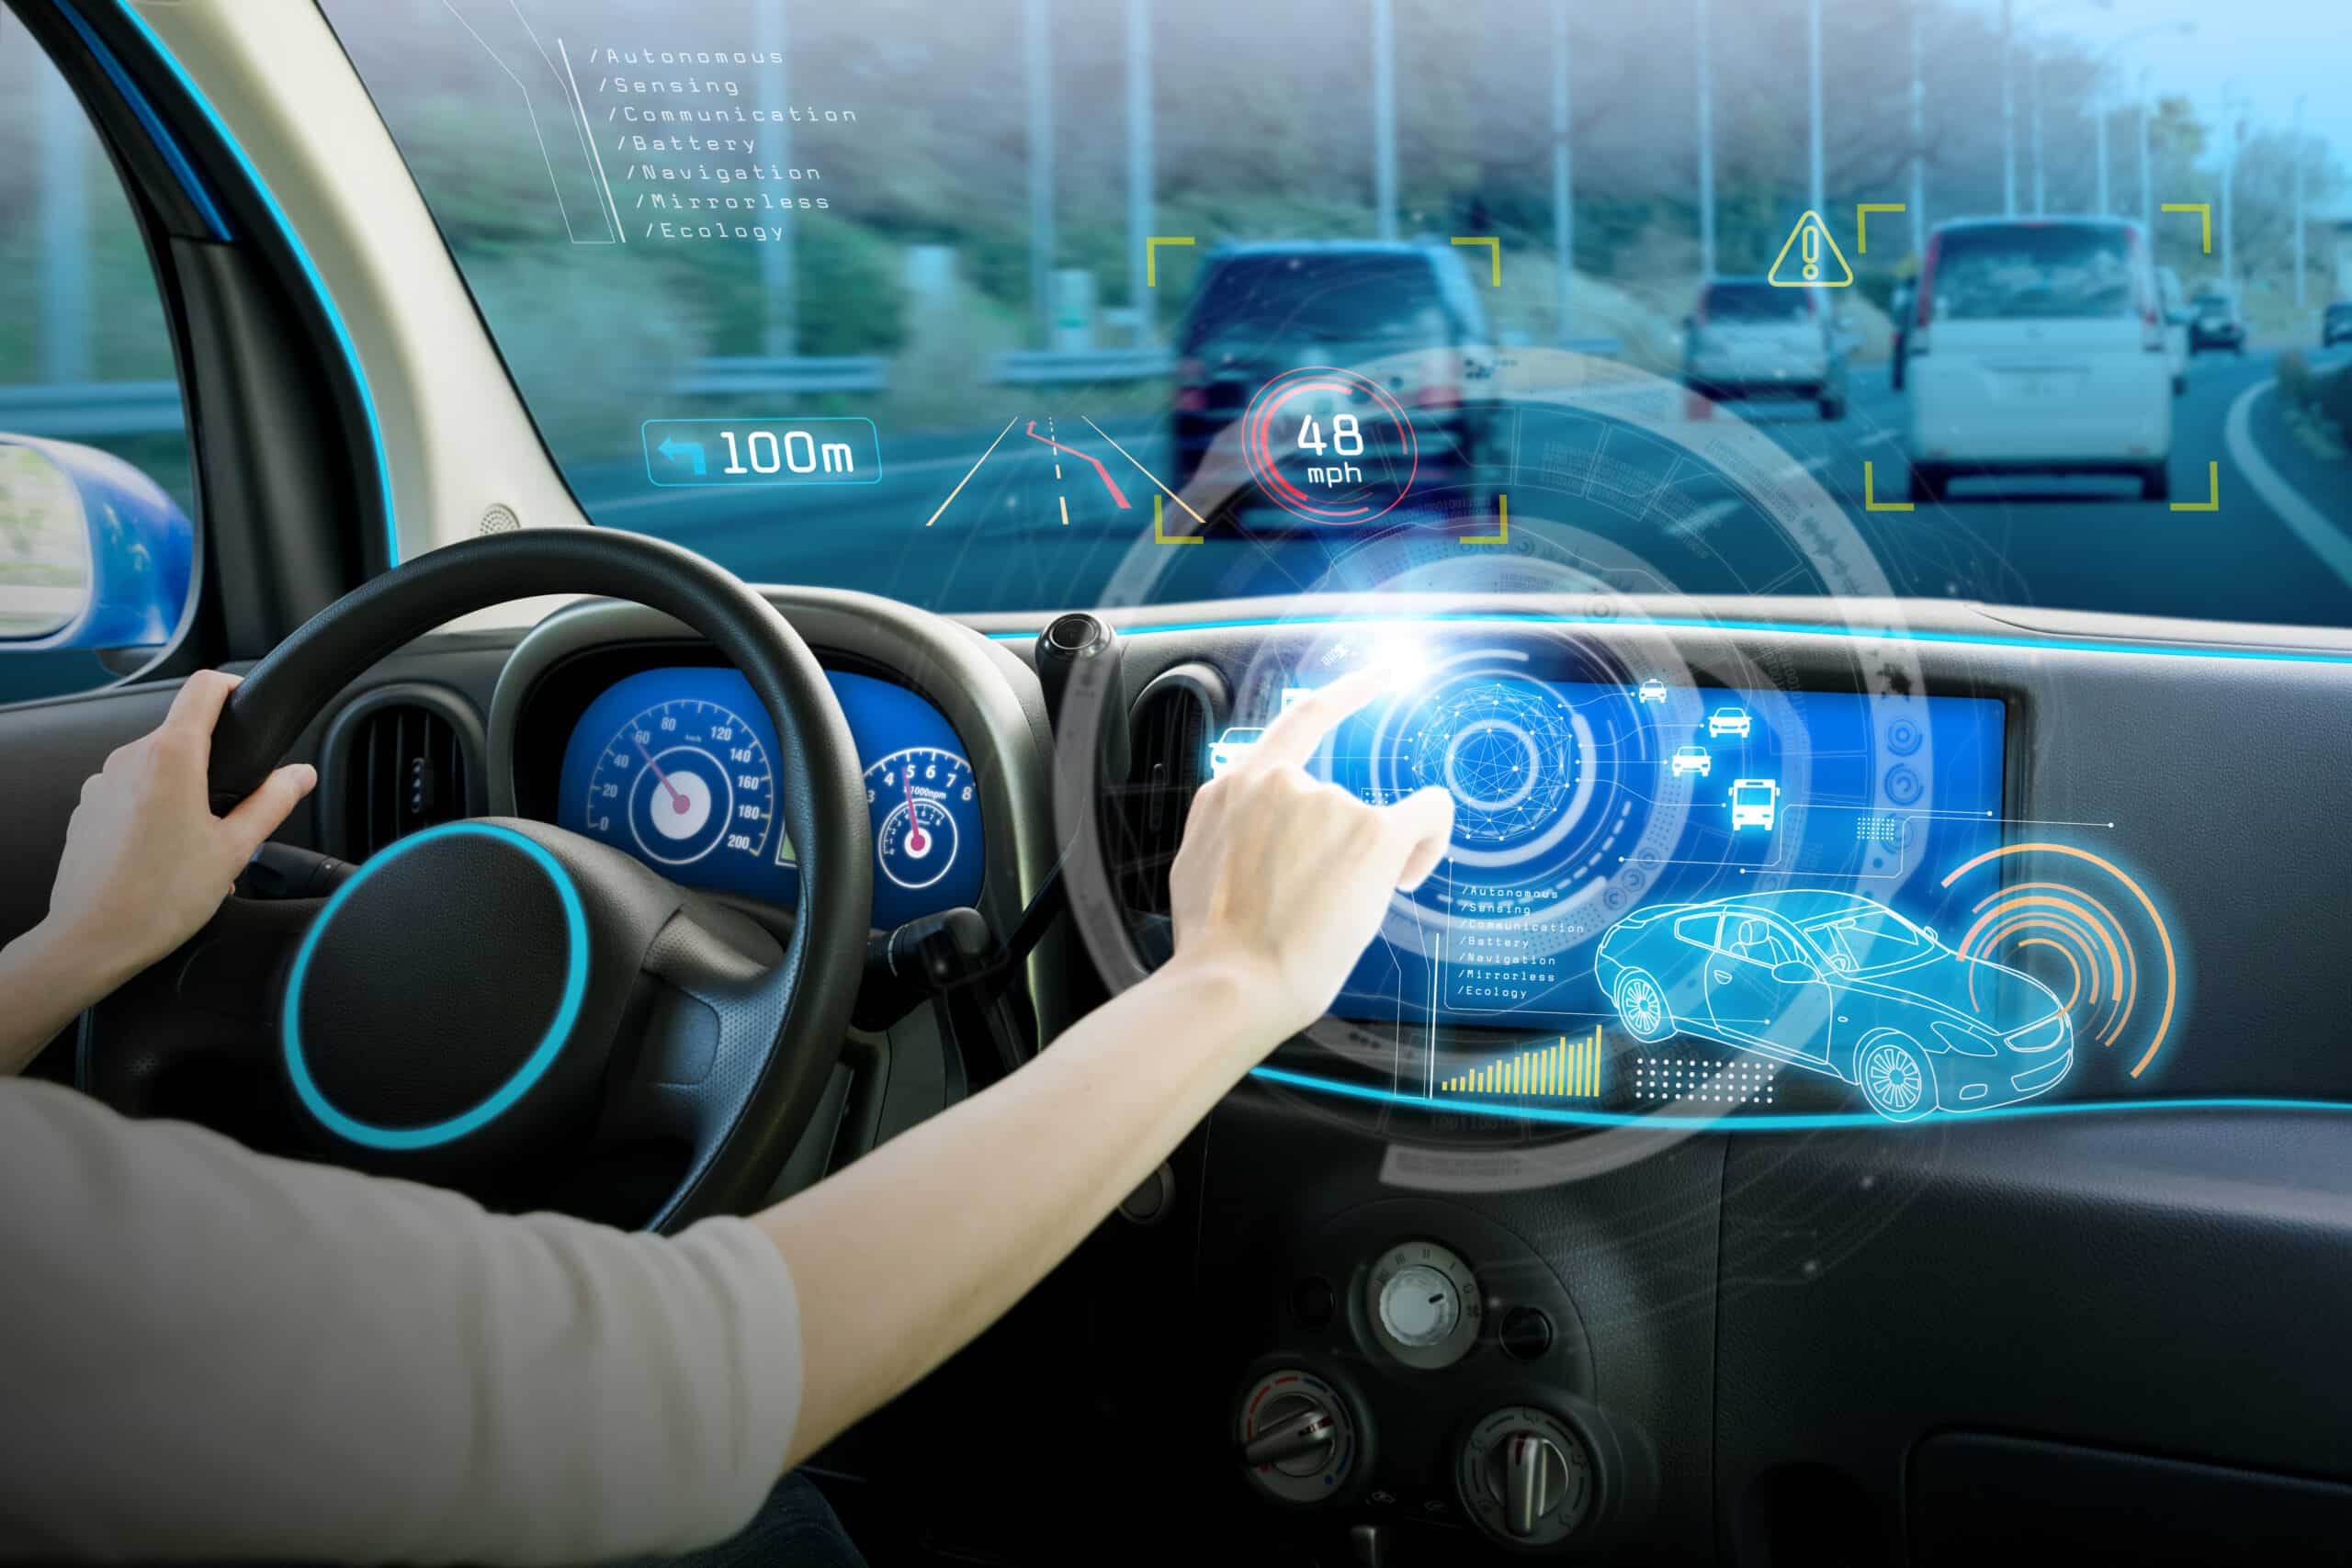 Eine Frau fährt ein Auto mit einem fortschrittlichen digitalen Bildschirm auf dem Armaturenbrett und leistet einen Beitrag zur ADAS-Entwicklung.